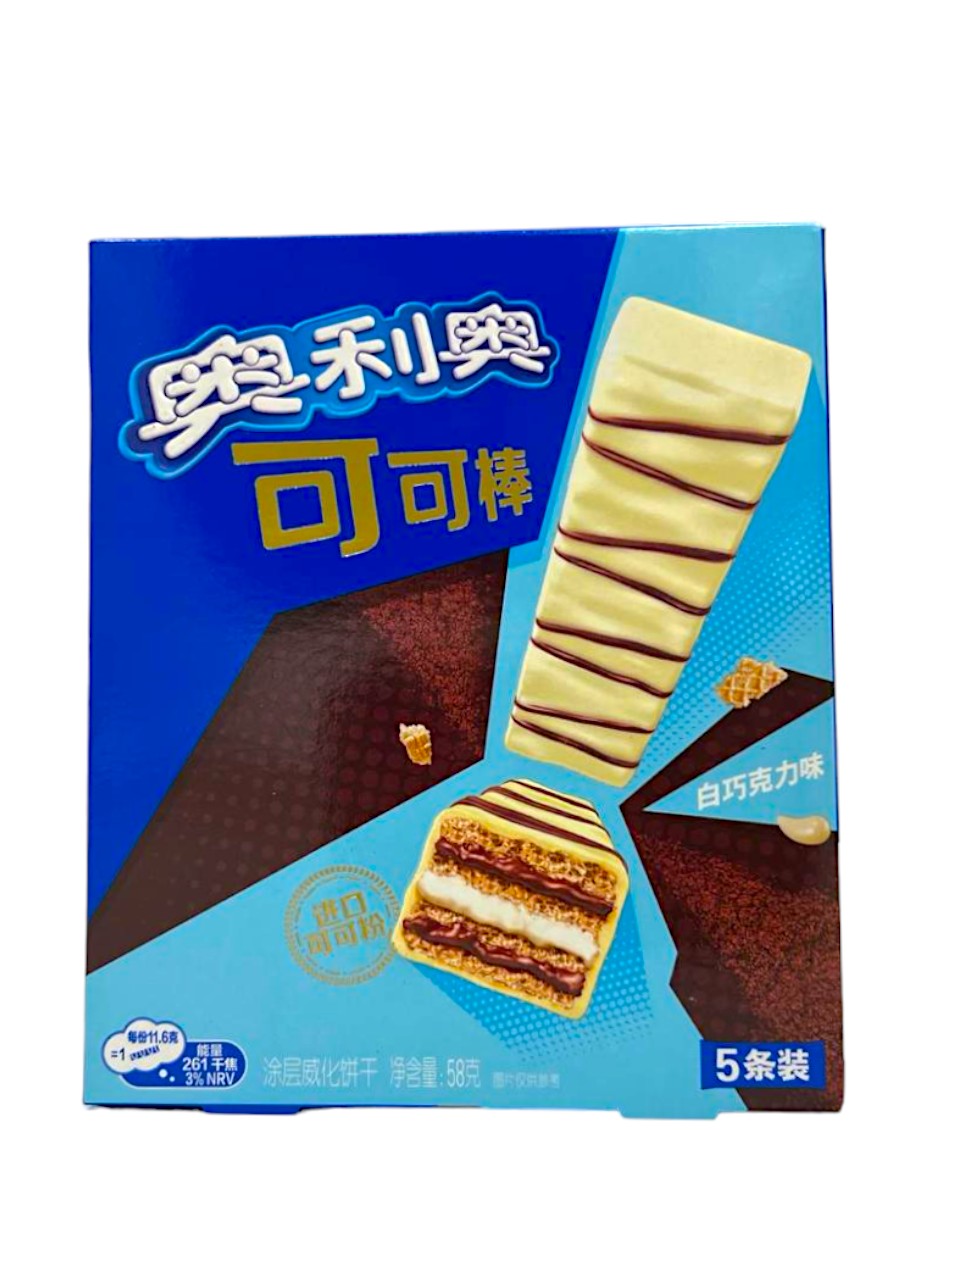 Oreo Choco Stick White (58g) (China)